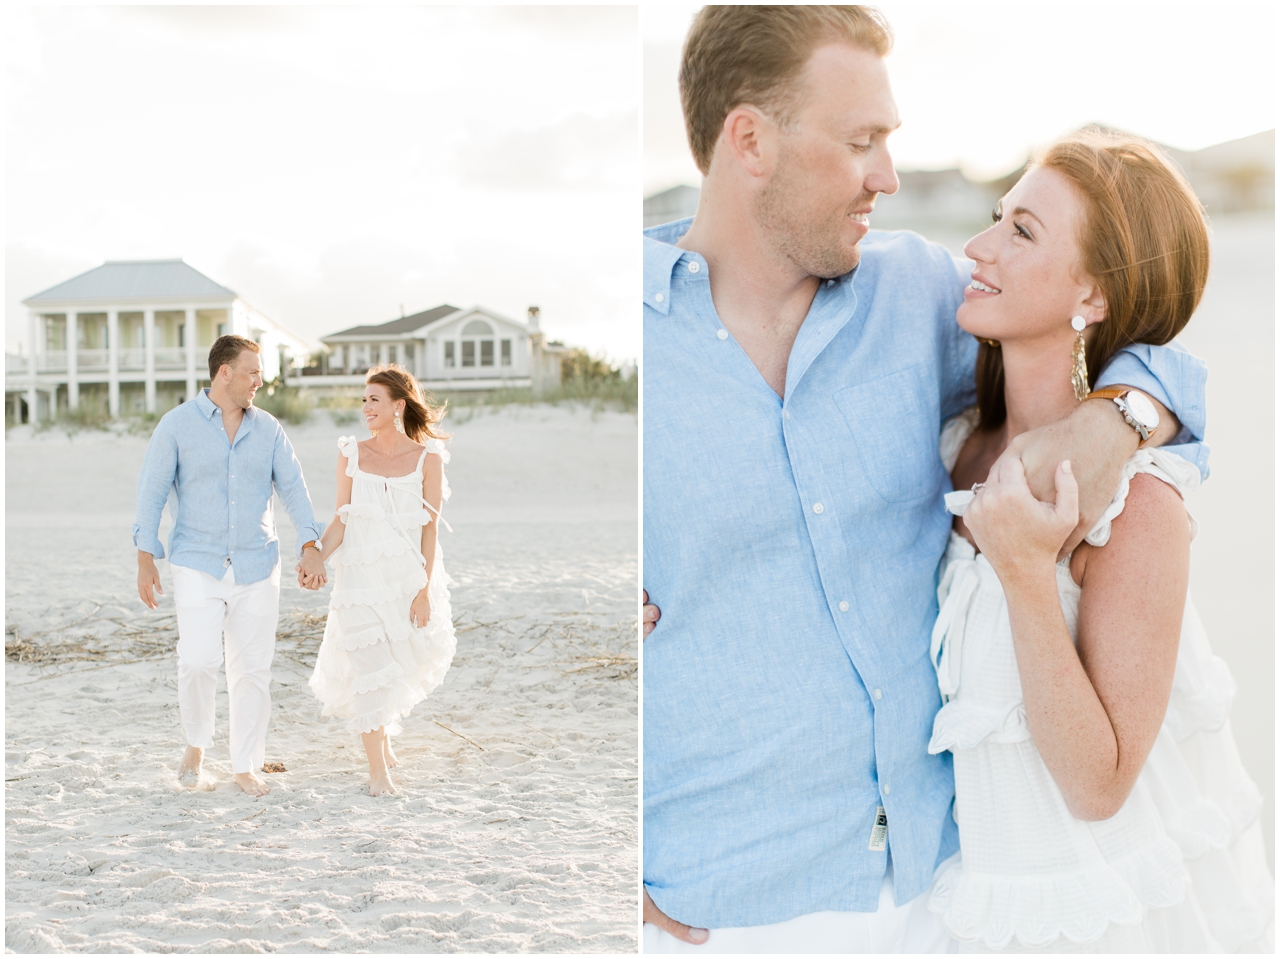 Jacksonville Wedding Photographer, Engagement Session, Brooke Images, Amelia Island Wedding Photographer, Lainie and Bo's Beach Session